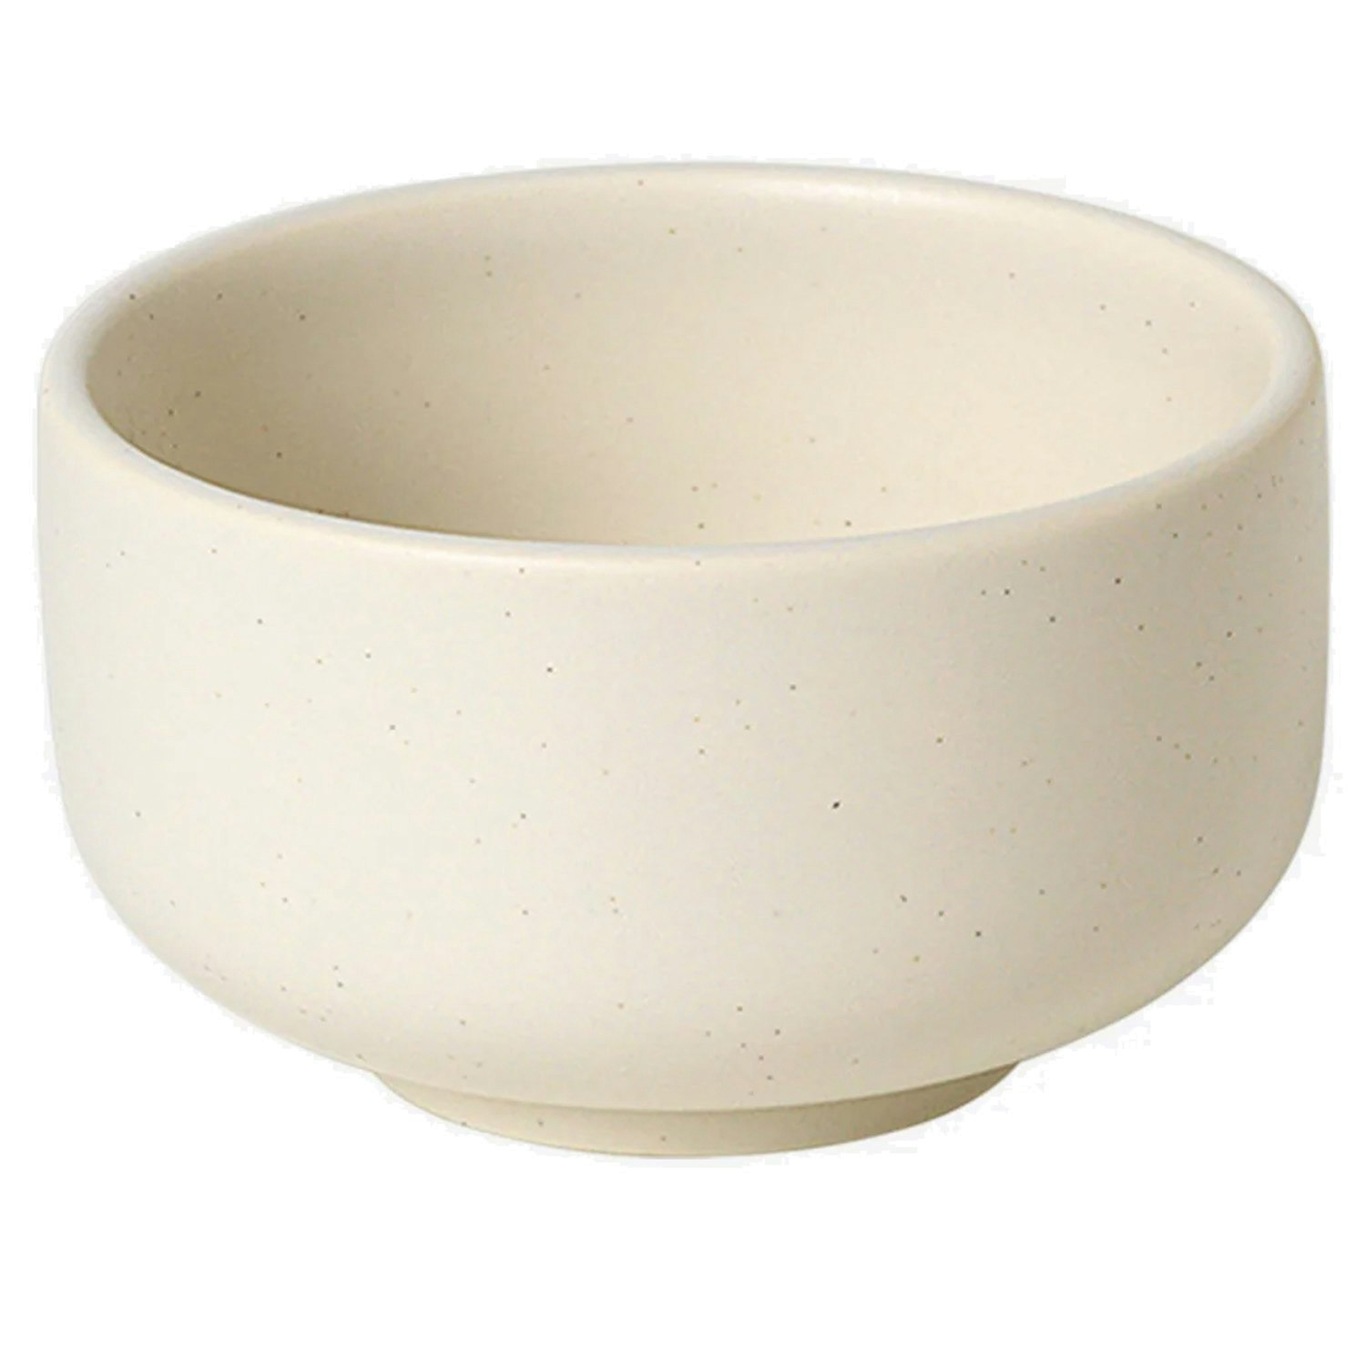 Ceramic Pisu Bowl Ø 9.3 cm, Vanilla White